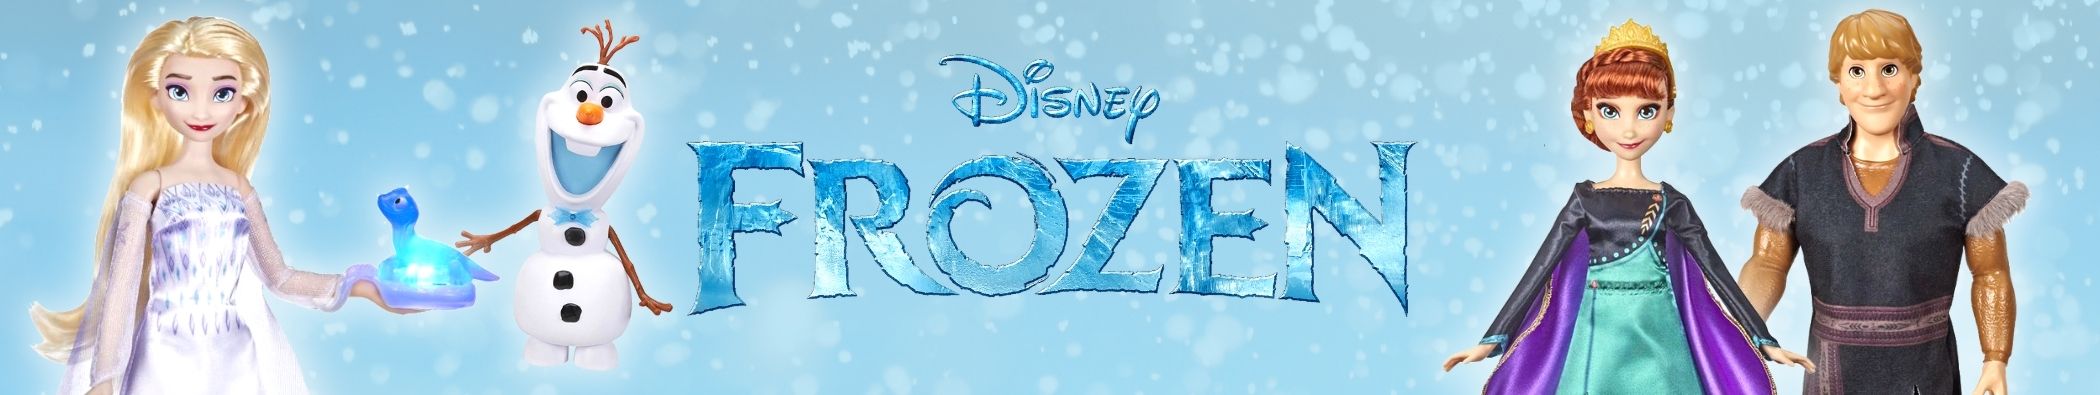 Muñecas Frozen